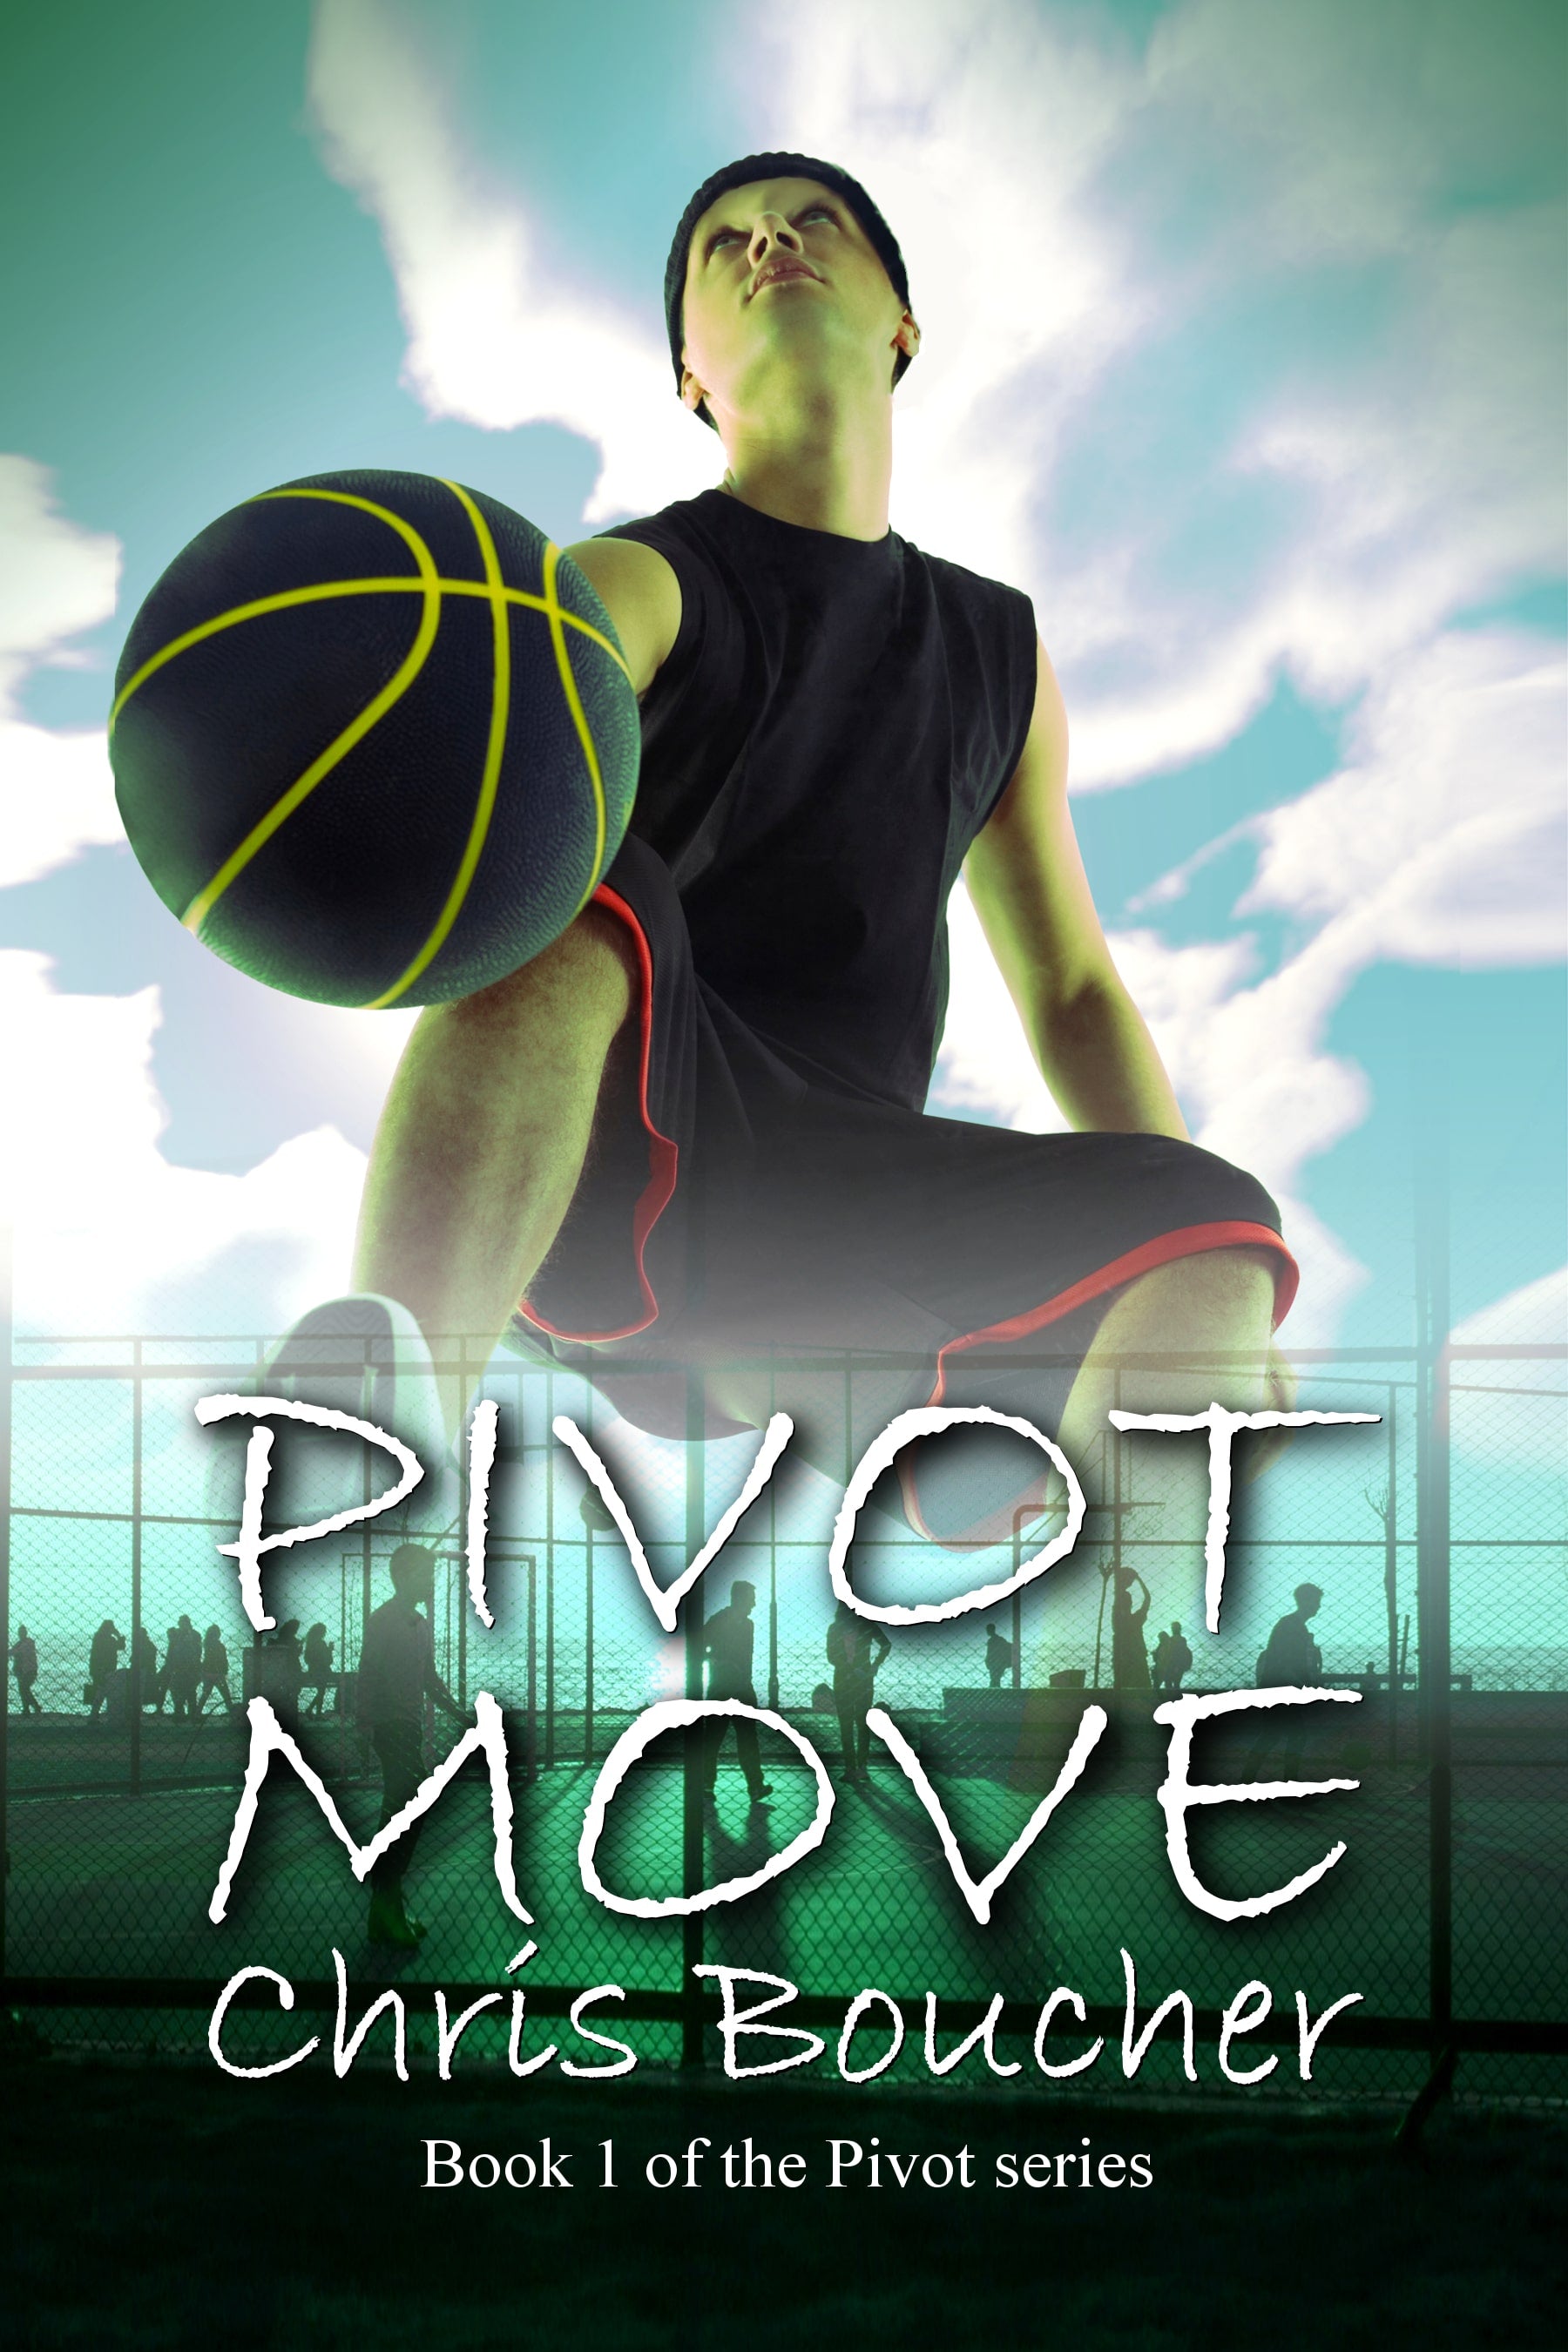 Minute Basketball: Pivots